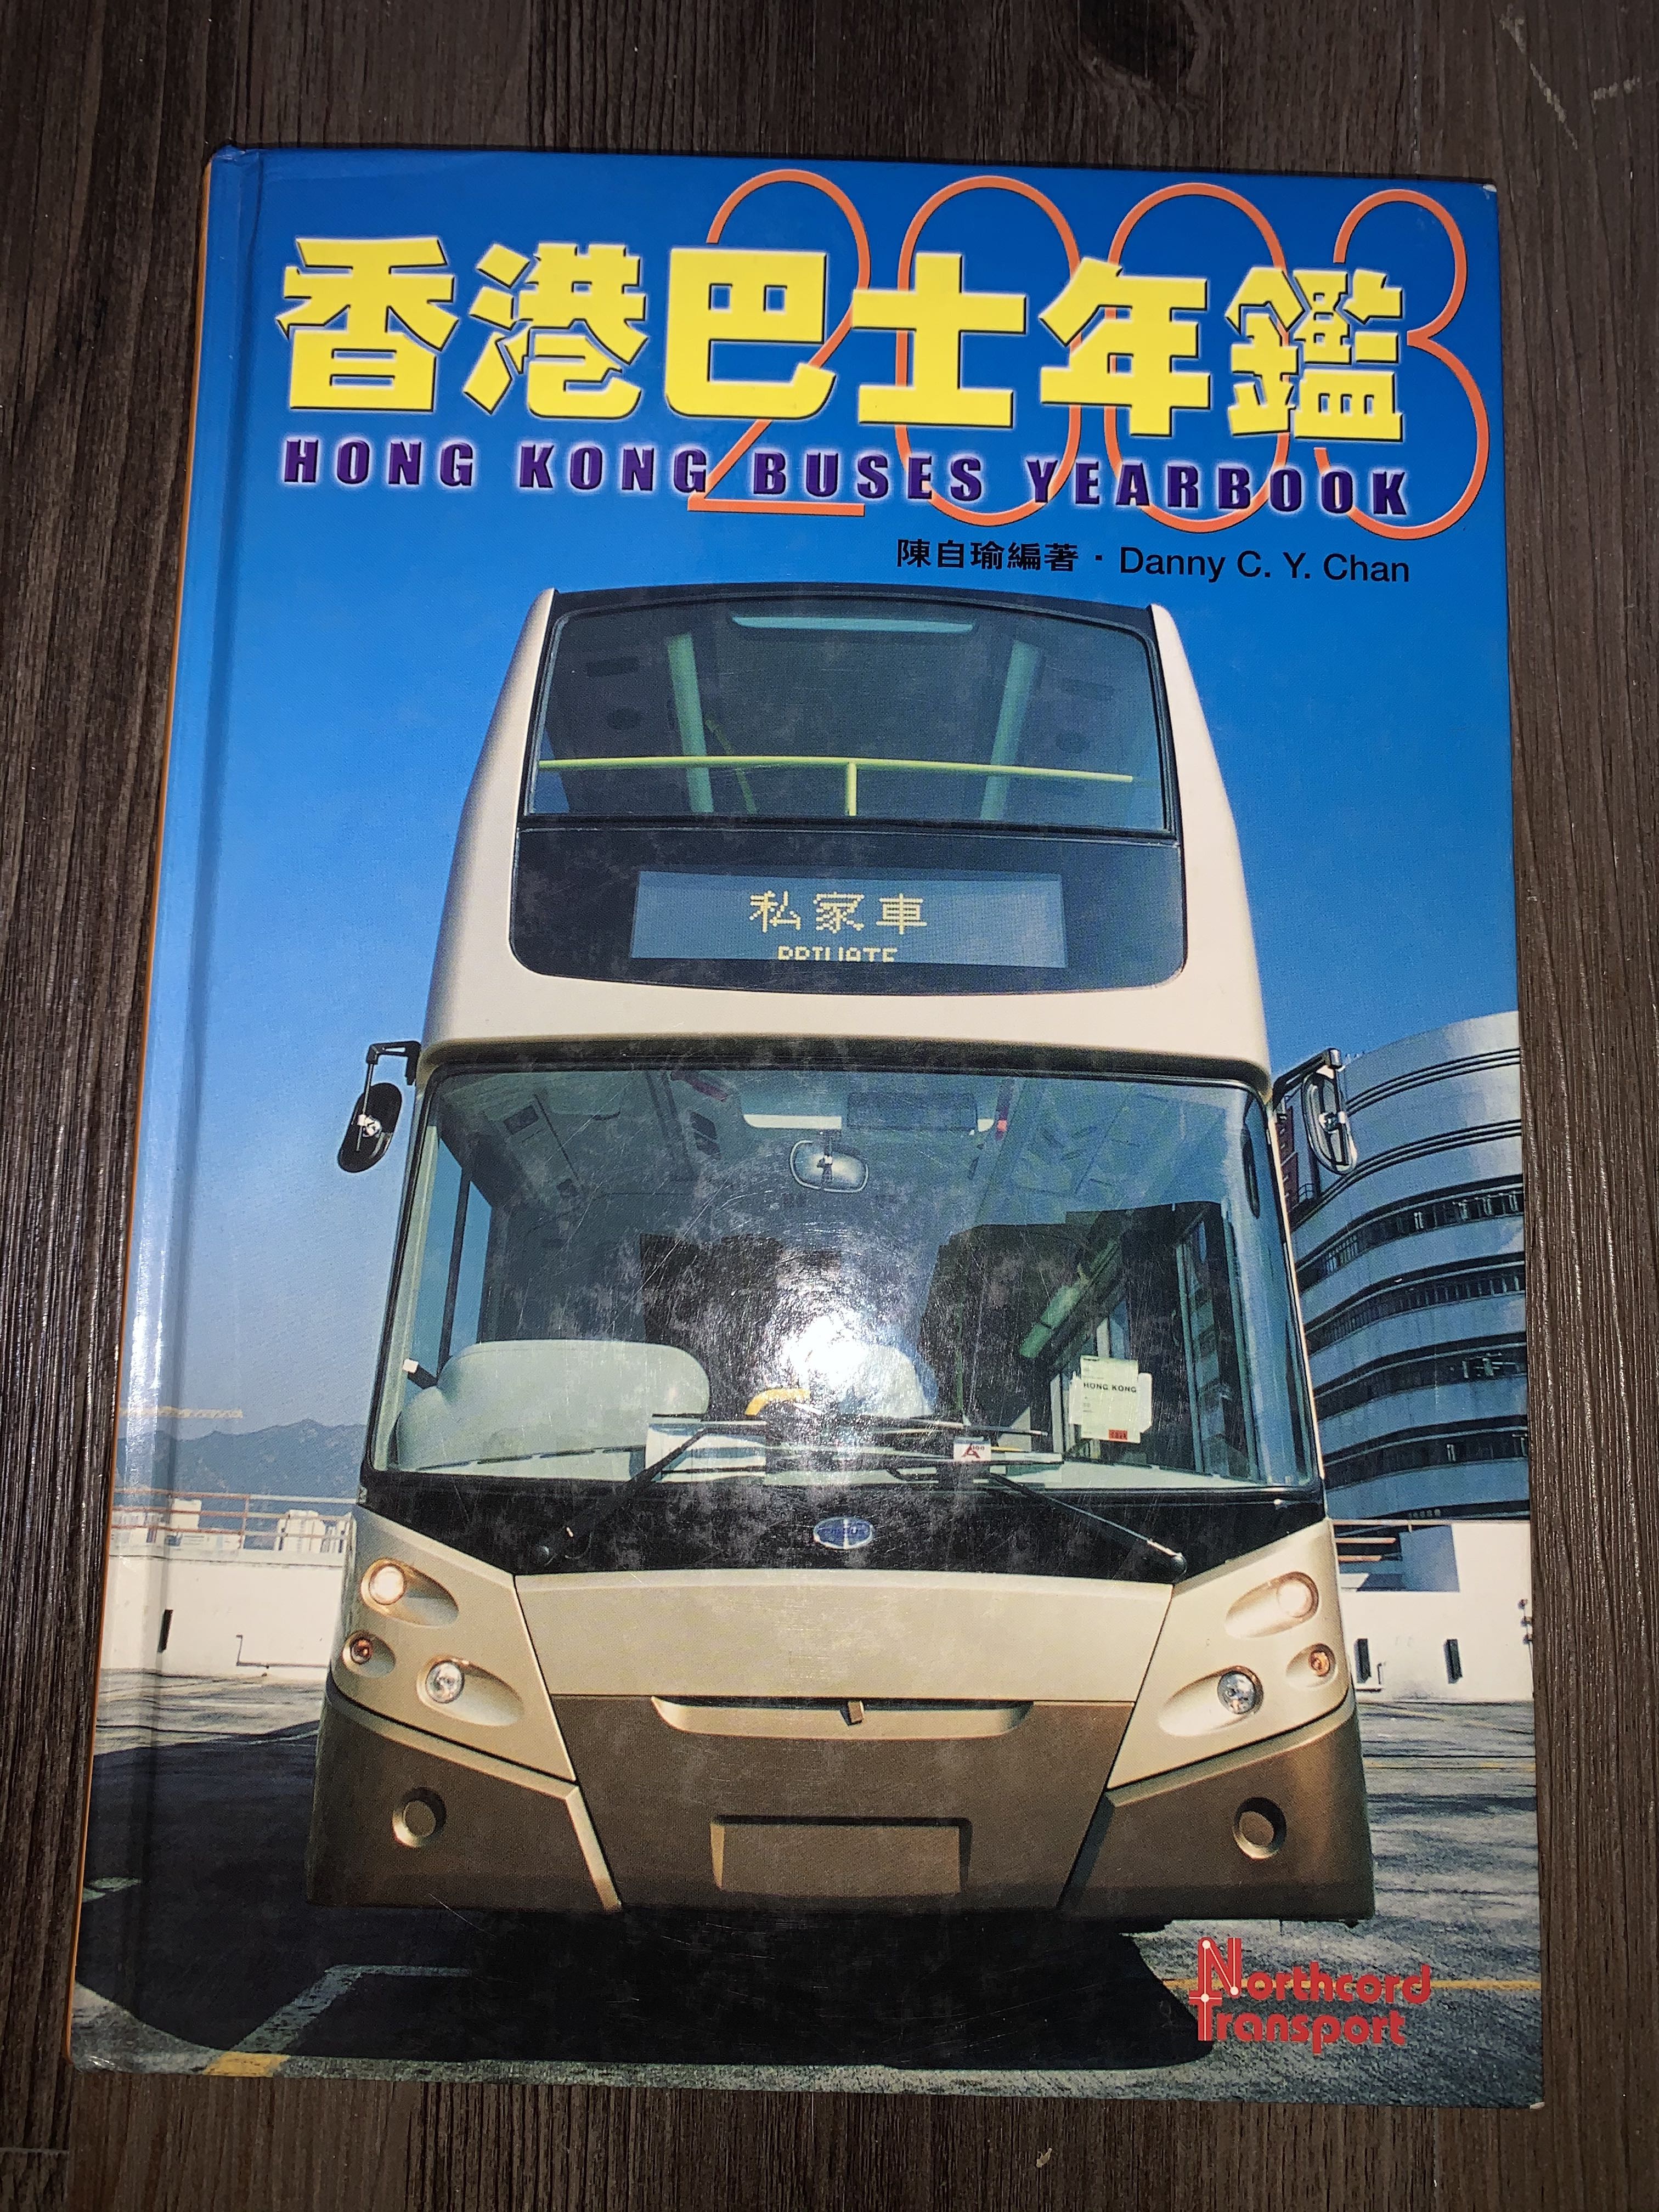 2003年香港巴士年鑑, 興趣及遊戲, 收藏品及紀念品, 郵票及印刷品